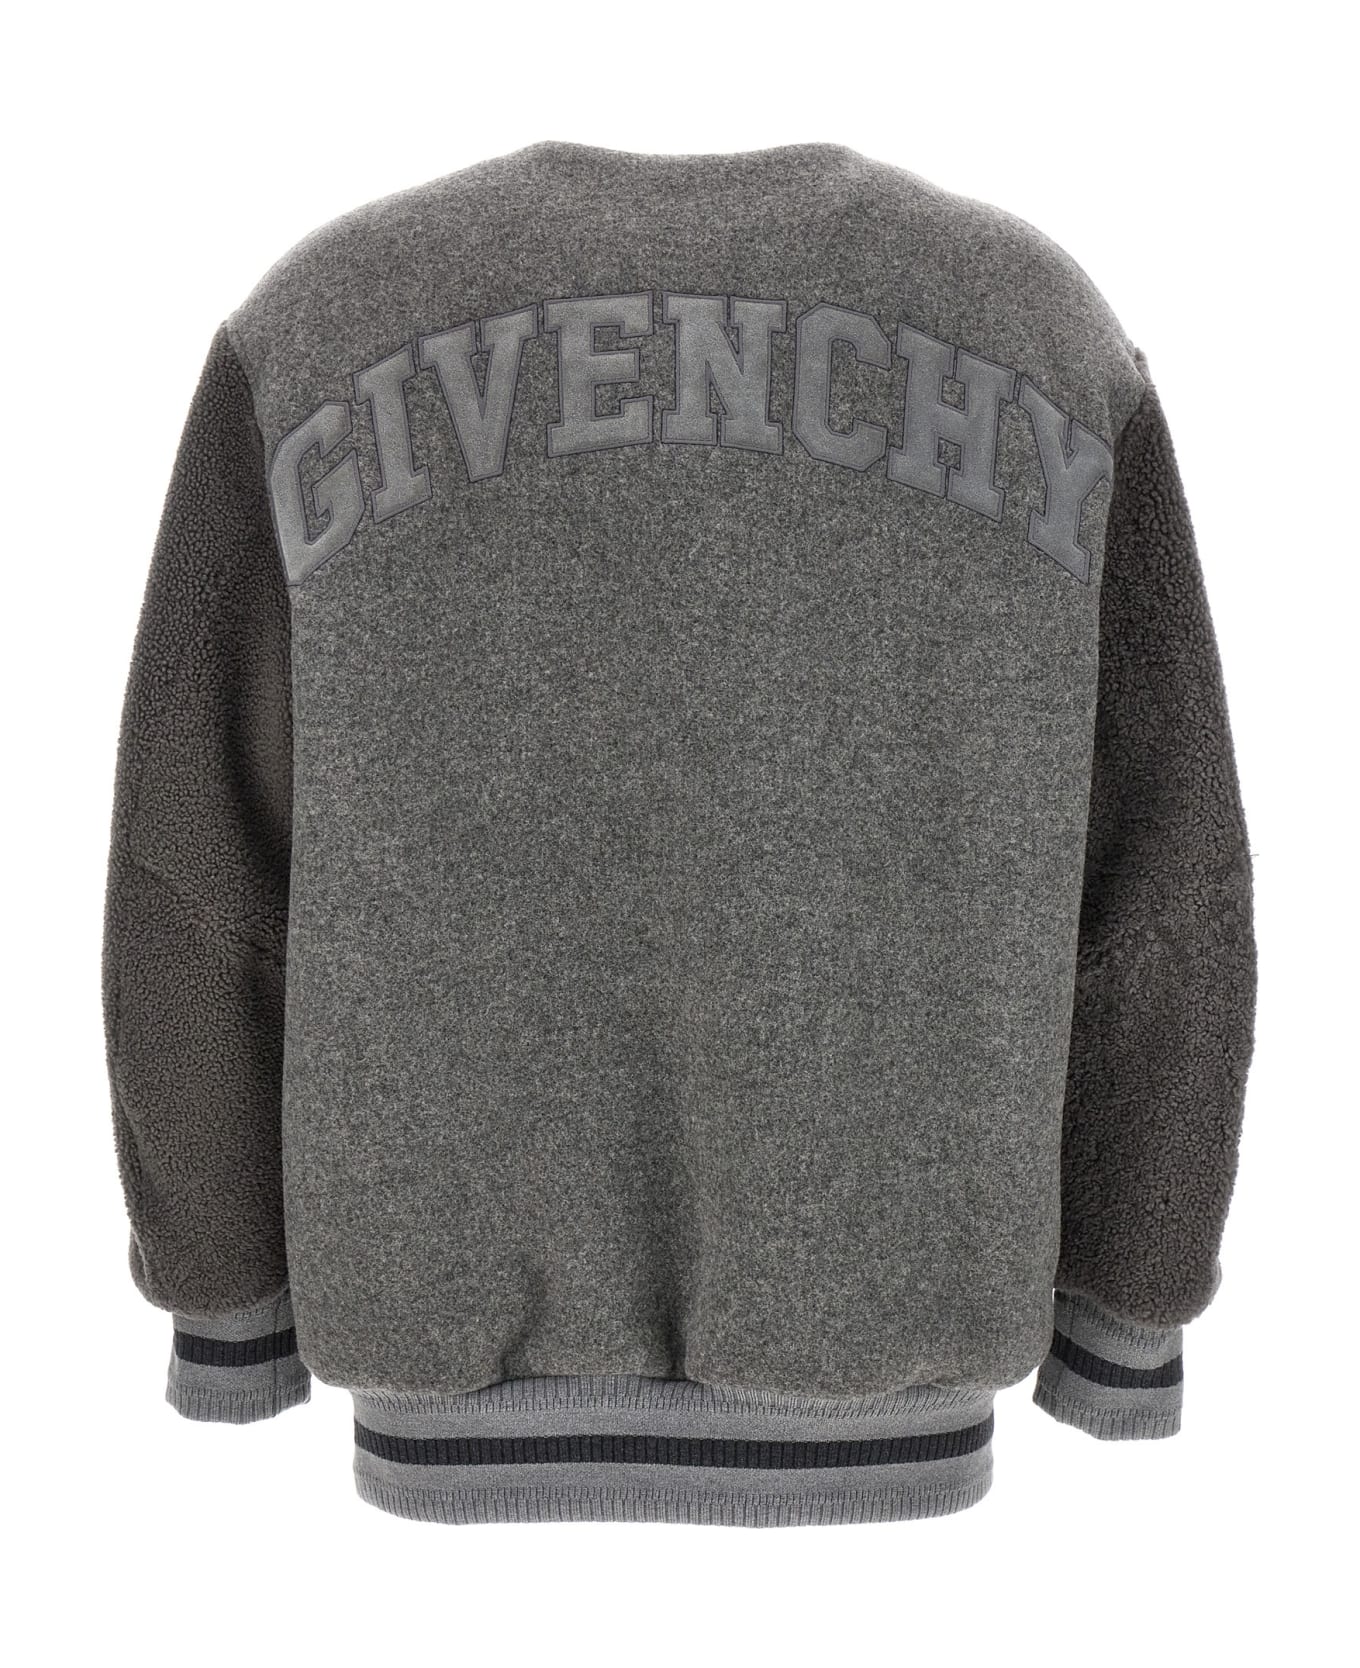 Givenchy Logo Bomber Jacket - Gray